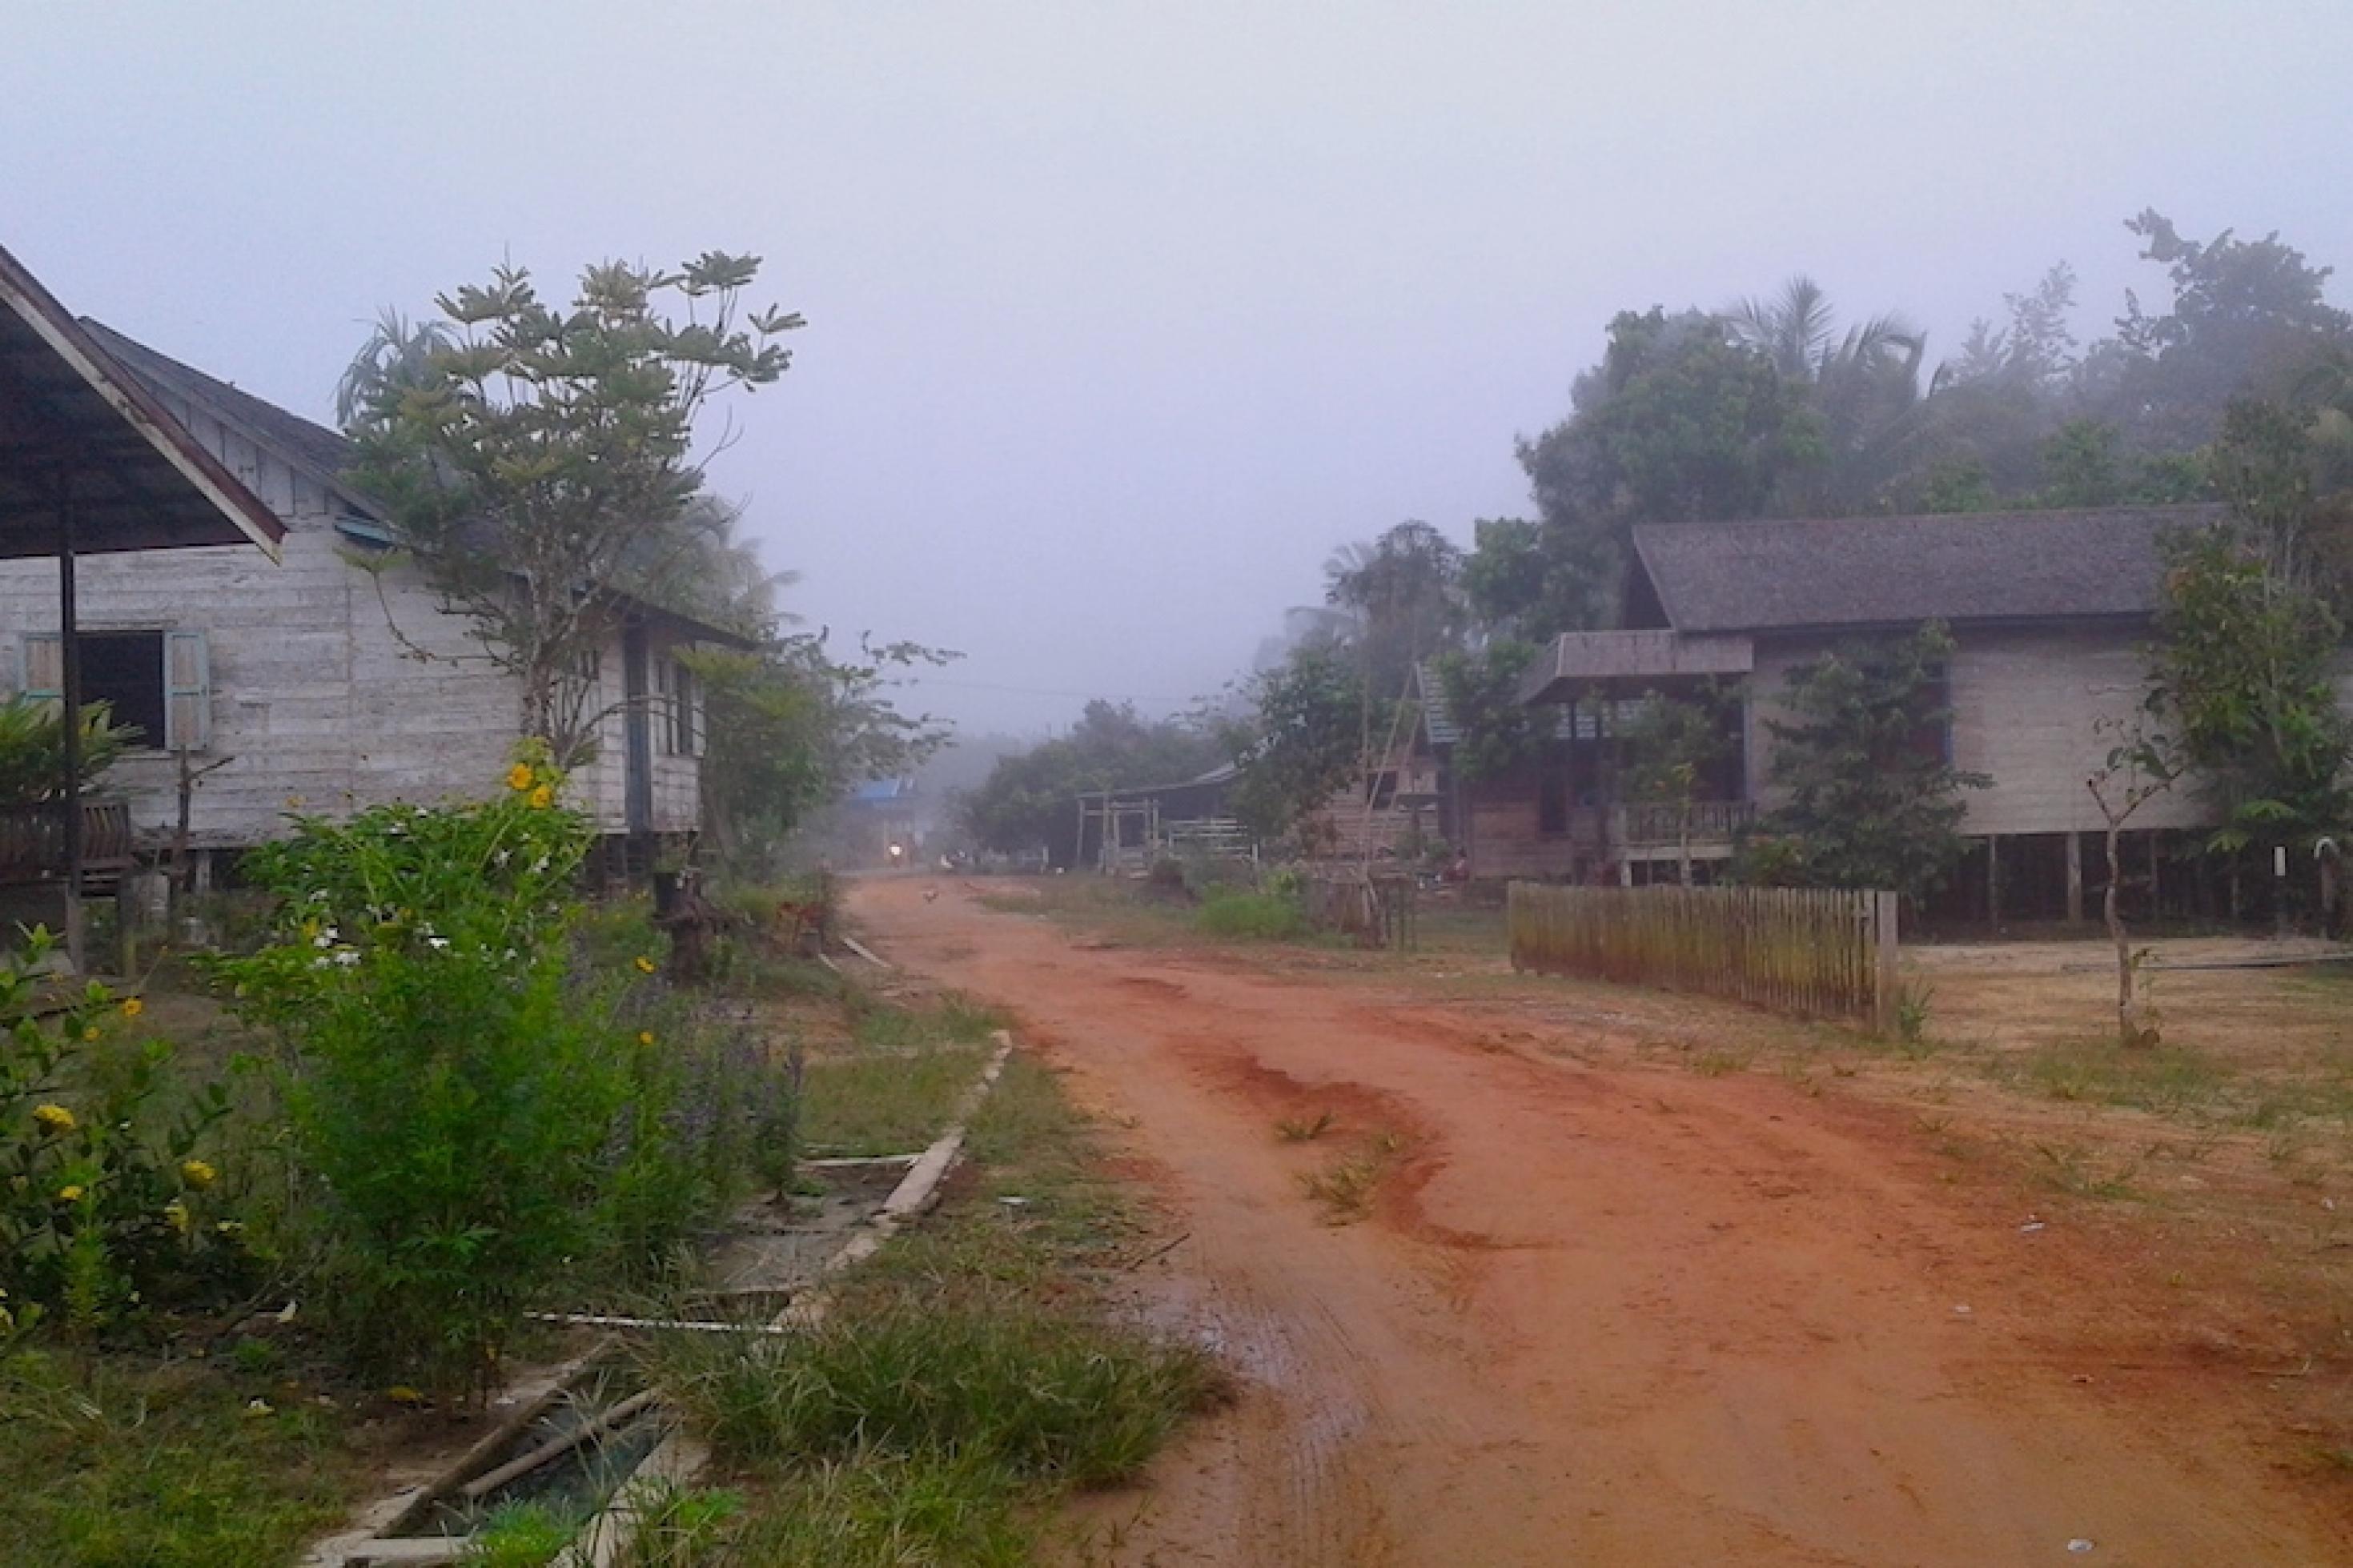 Ungepflasterte Dorfstraße von Tumbang Mantuhe im dunstigen Licht der Dämmerung führt entlang einfacher Holzhäuser auf Stelzen